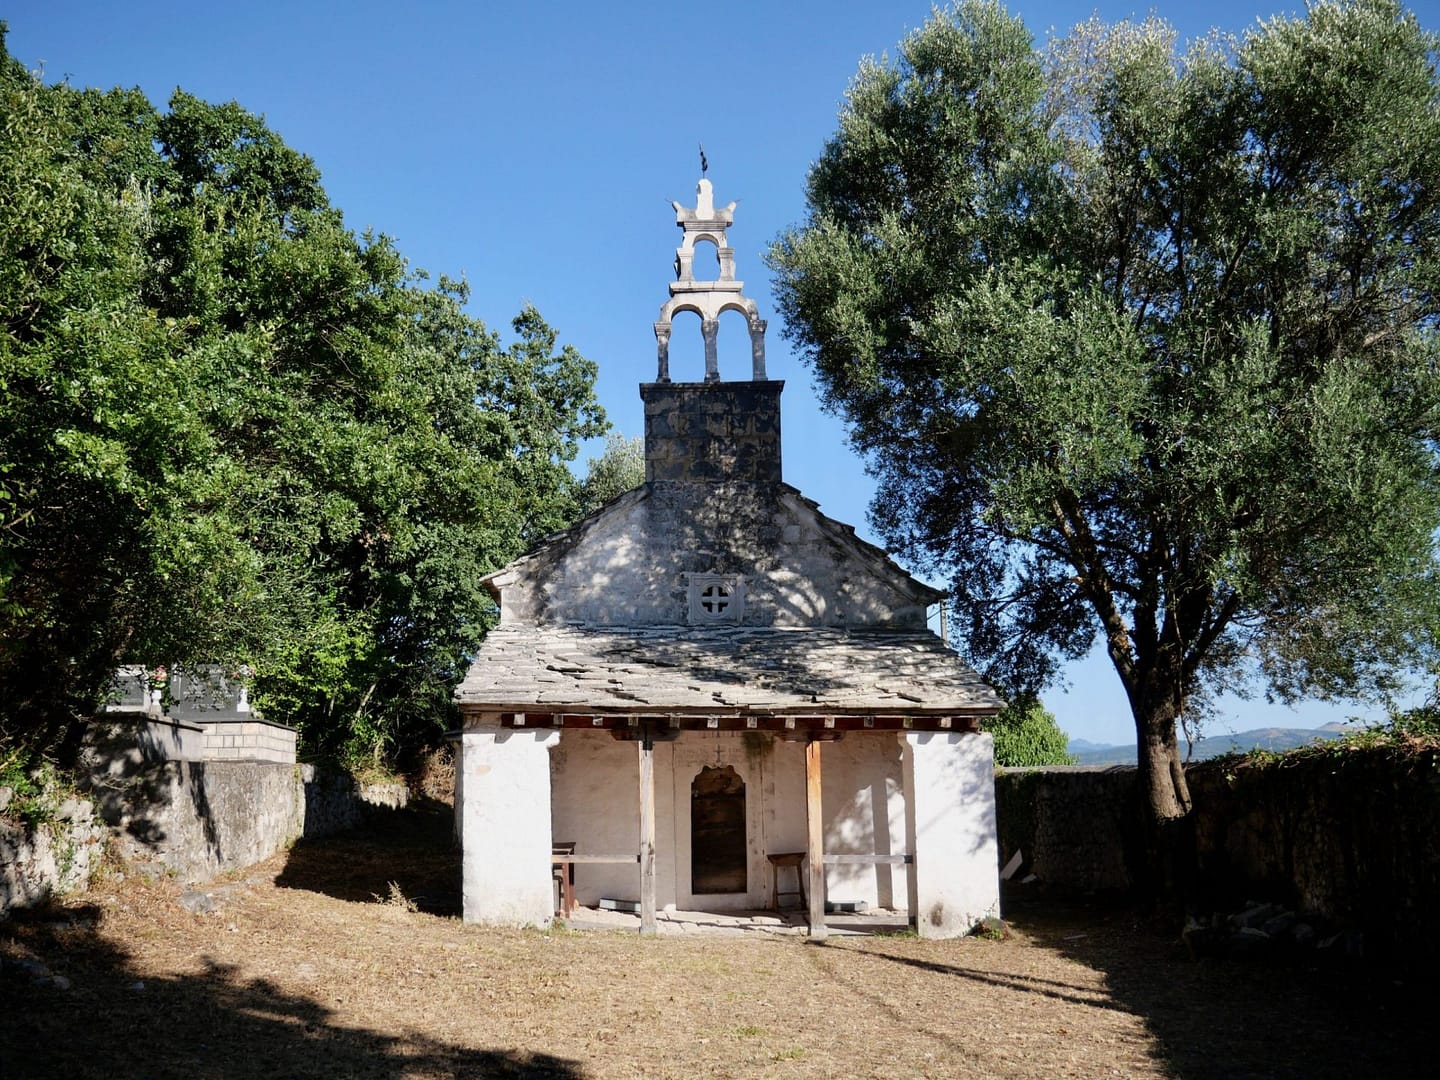 Kerkje van Petrus & Paulus uit de 15e eeuw